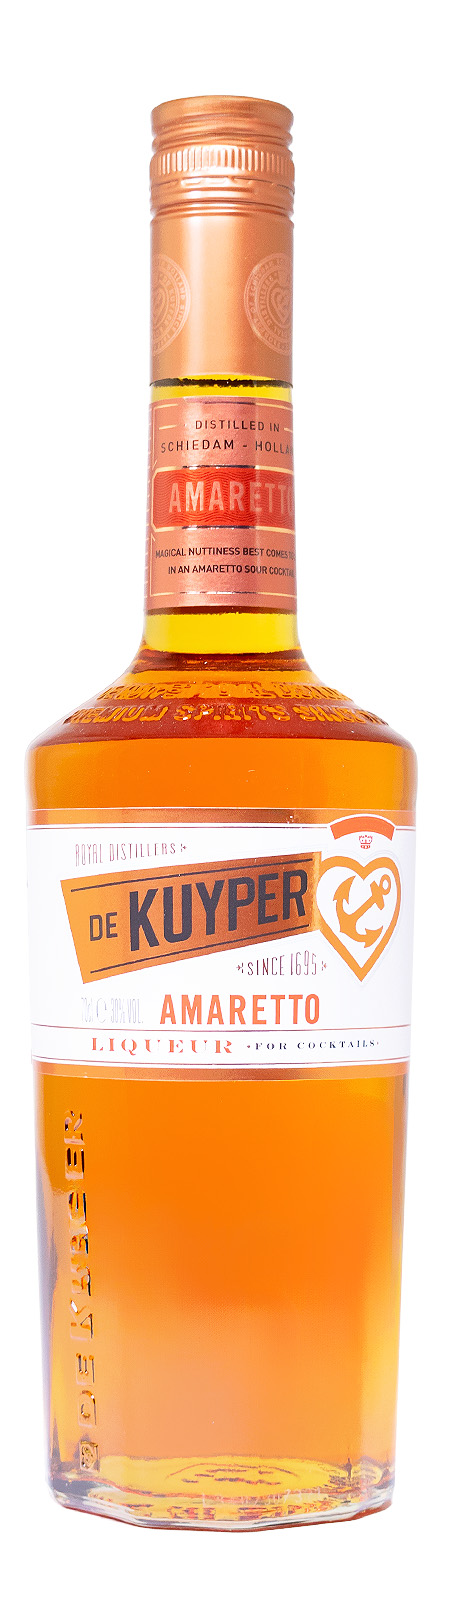 De Kuyper Amaretto - 0,7L 30% vol